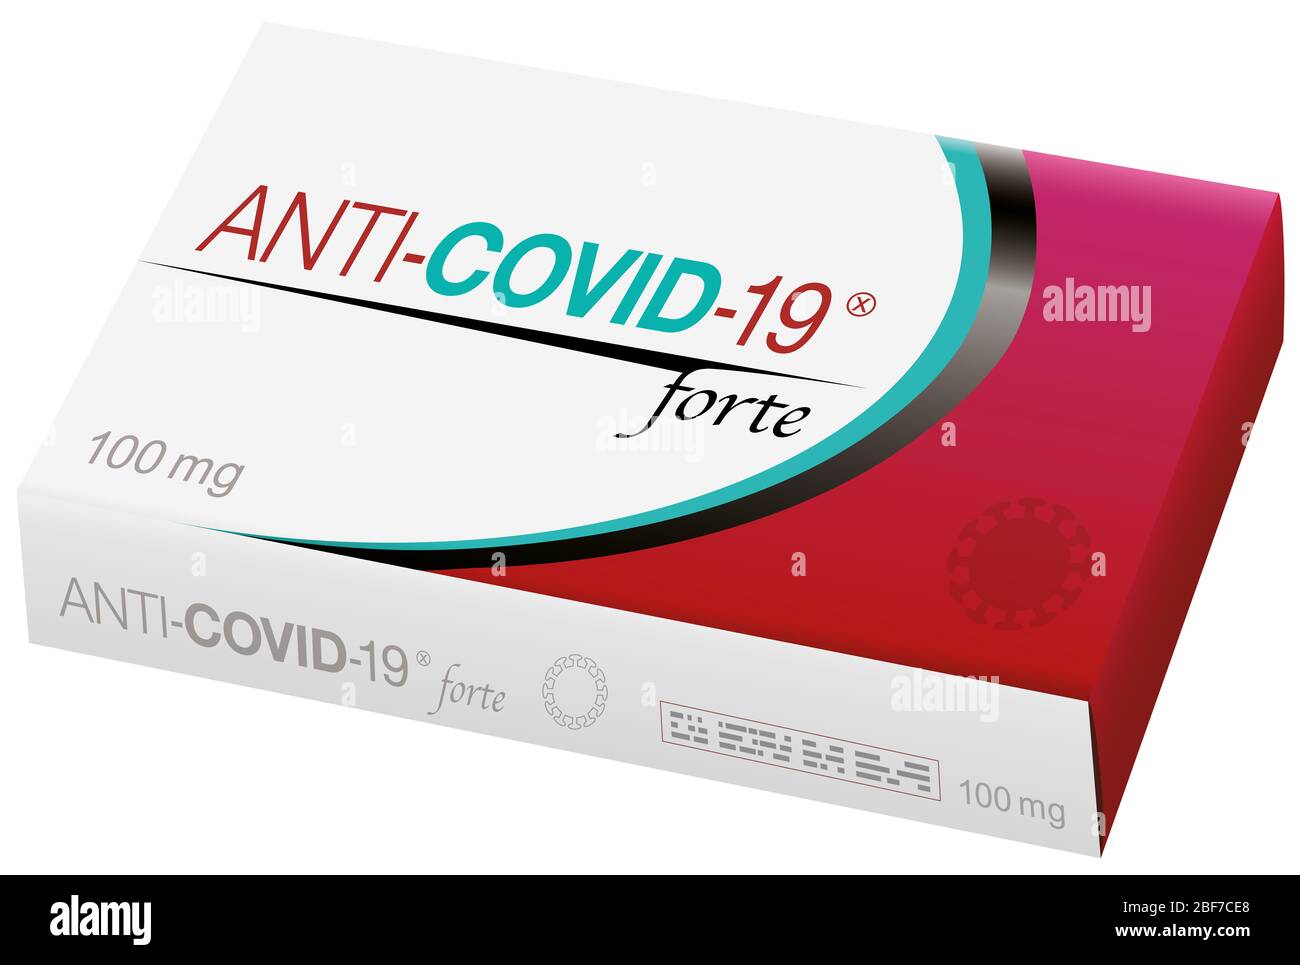 Pillen genannt ANTI COVID 19, ein medizinisches gefälschtes Produkt über Coronavirus-Infektion, Geschäft der großen Pharmaindustrie. Stockfoto